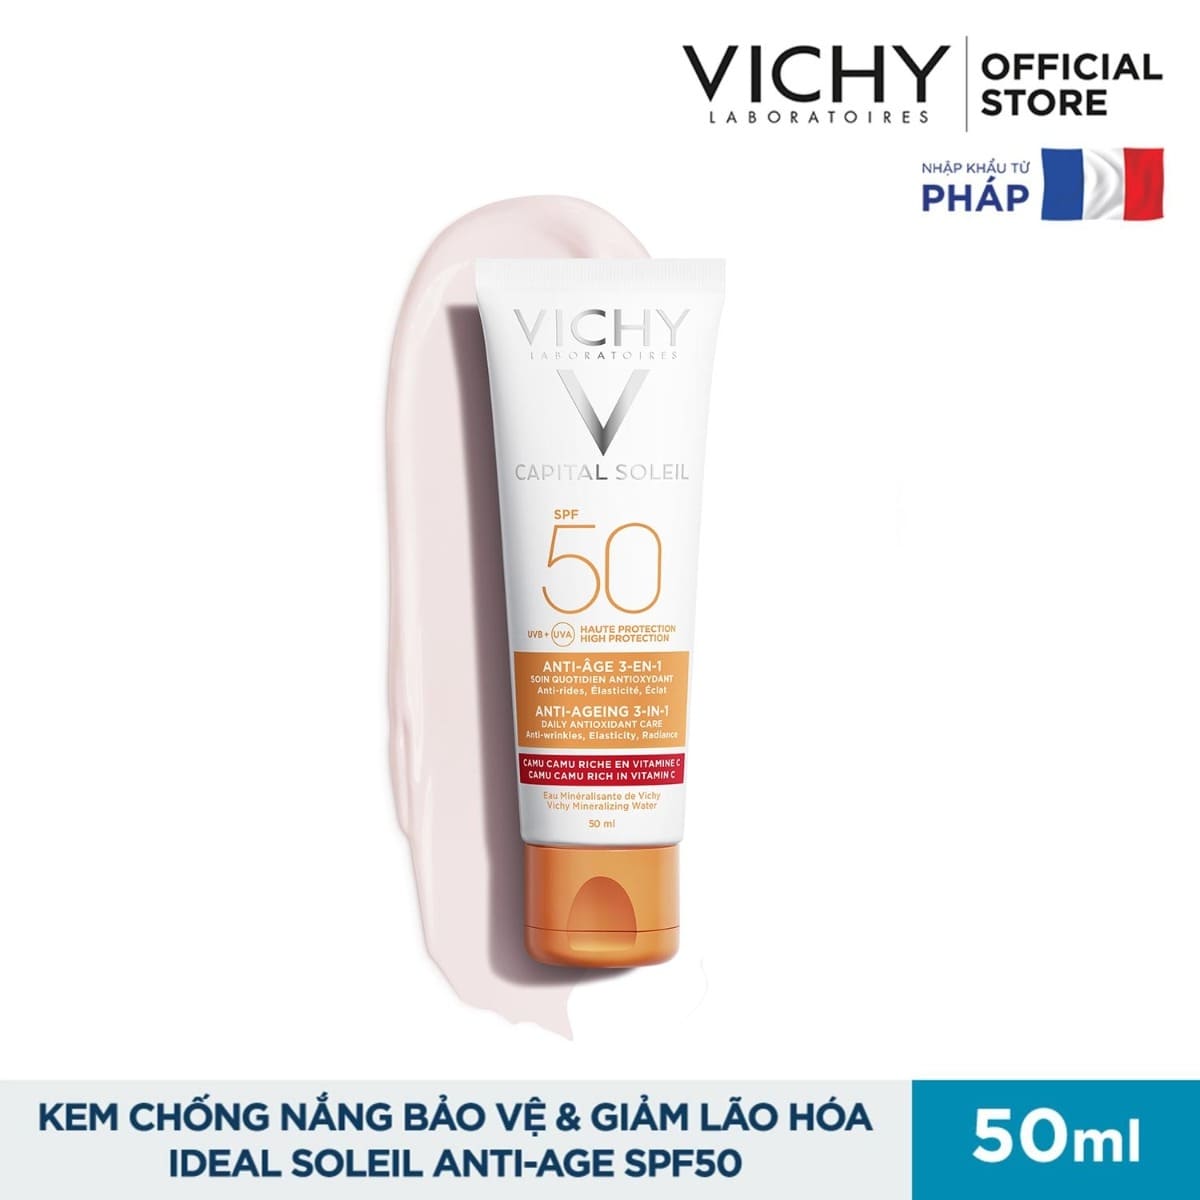 Kem chống nắng ngừa lão hoá Vichy Capital Soleil Anti-Ageing 3-in-1 SPF 50 UVB+UVA